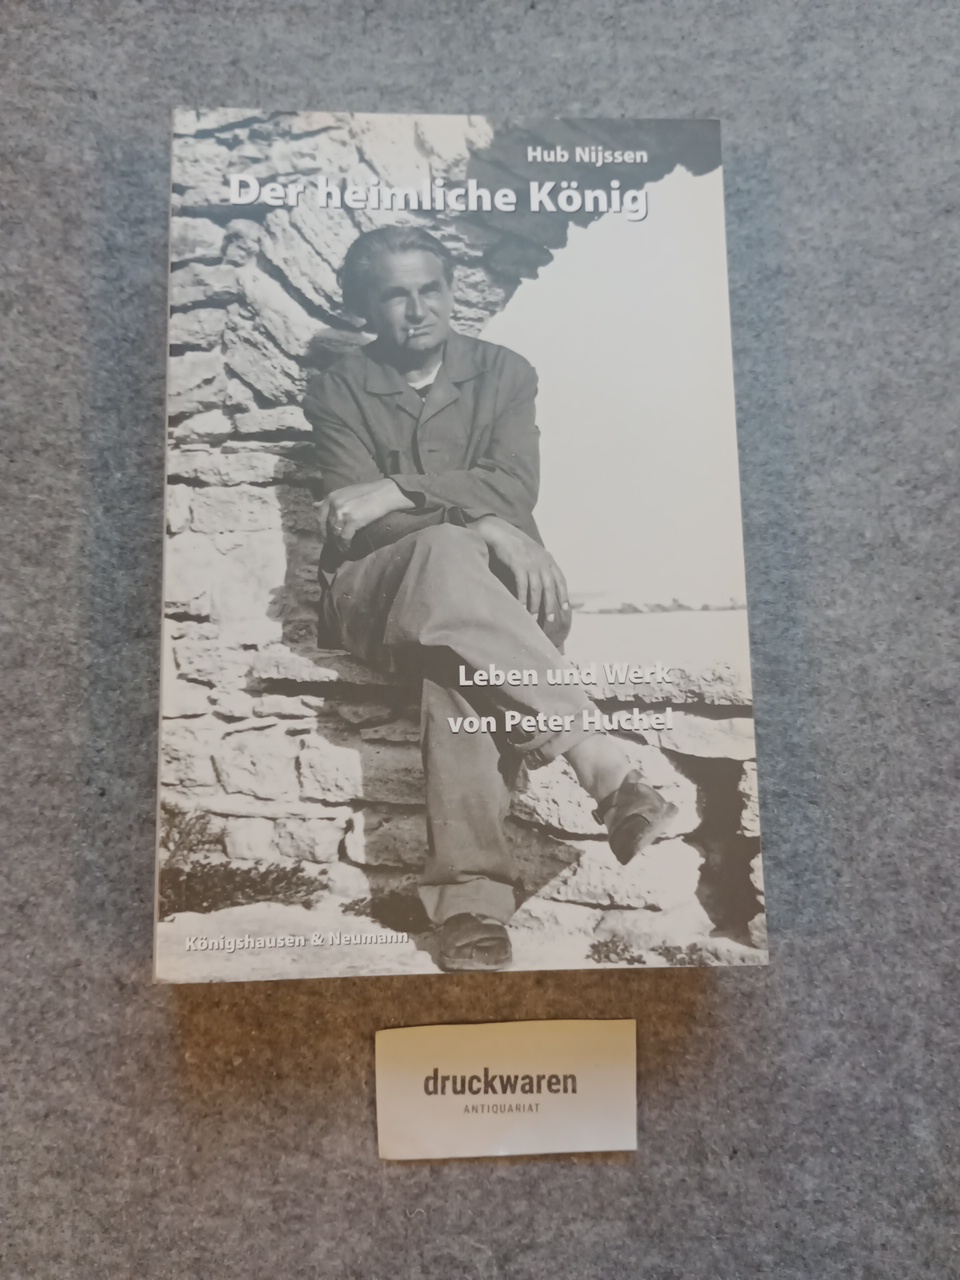 Der heimliche König : Leben und Werk von Peter Huchel. Epistemata / Reihe Philosophie Bd. 235. - Nijssen, Hub